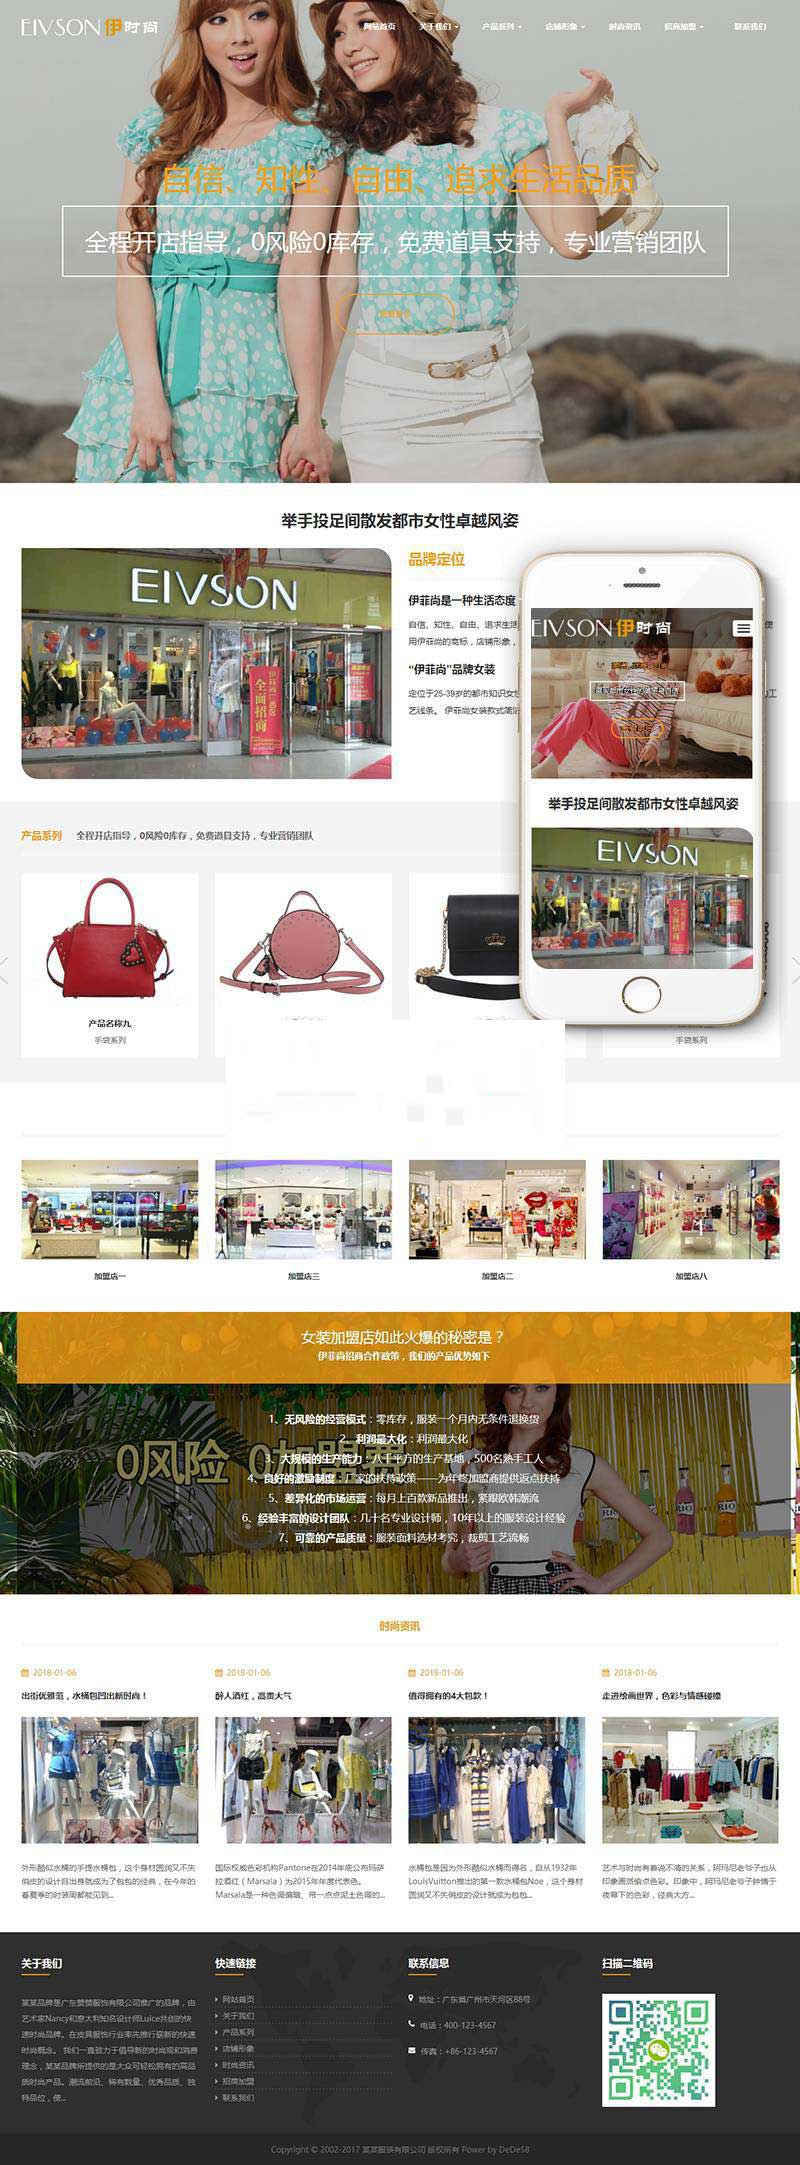 织梦dedecms响应式时尚服装包包企业网站模板(自适应手机移动端)